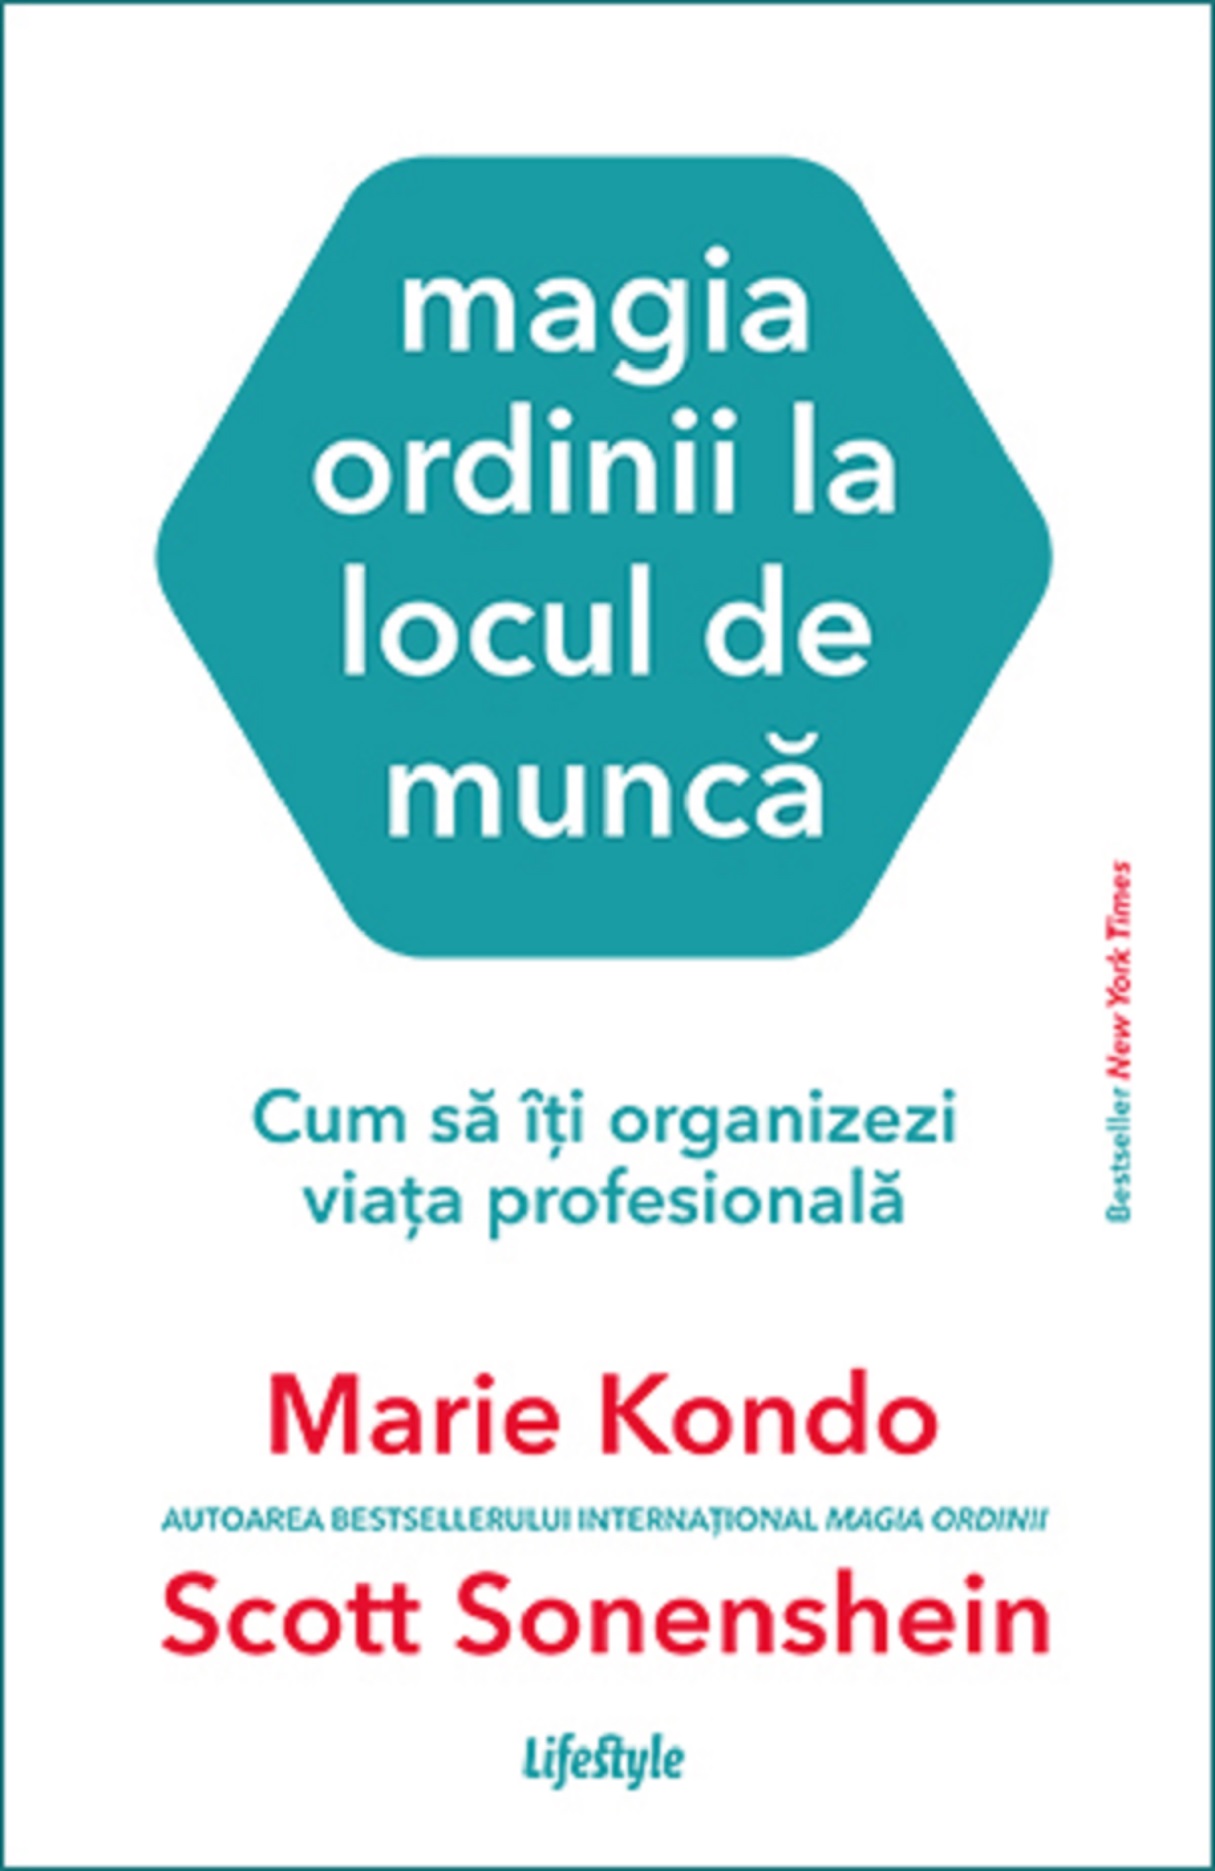 Magia ordinii la locul de munca | Marie Kondo Business imagine 2022